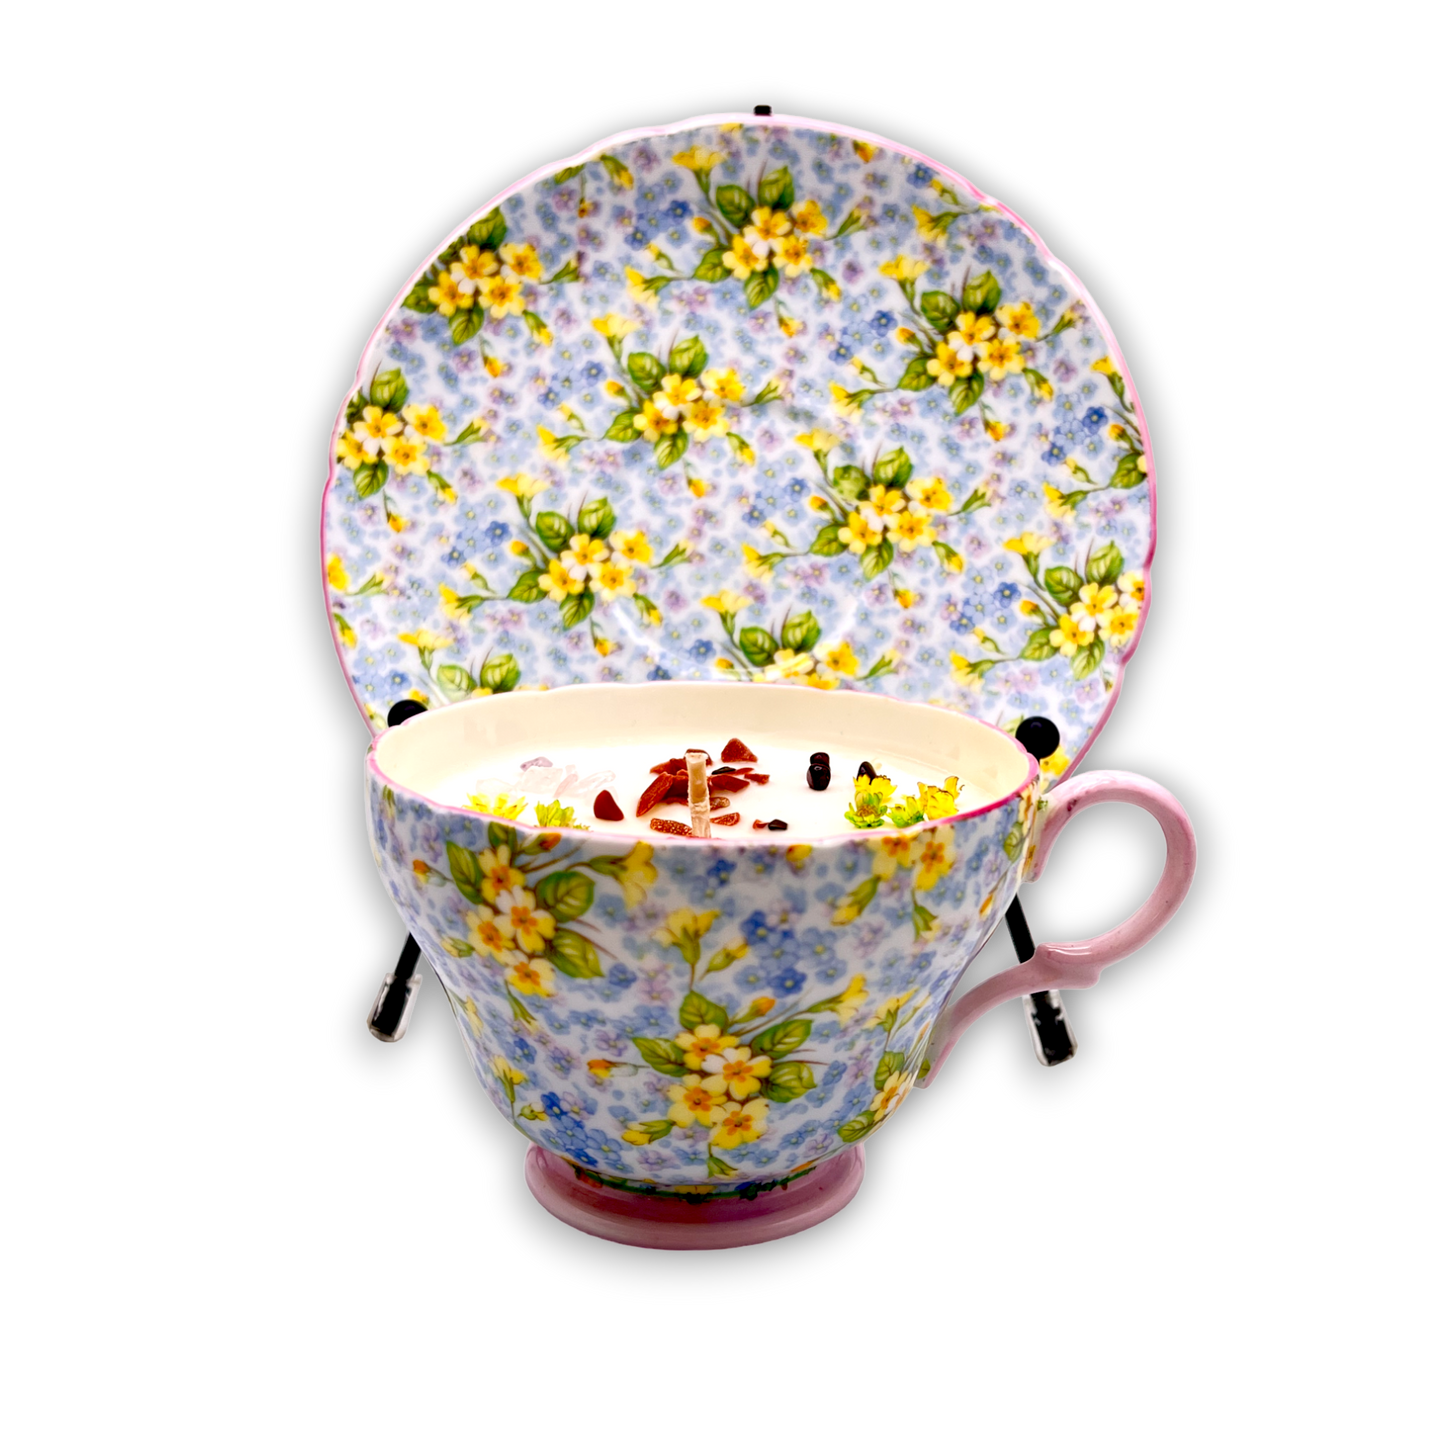 British Shelley Primrose Vintage Teacup Candle